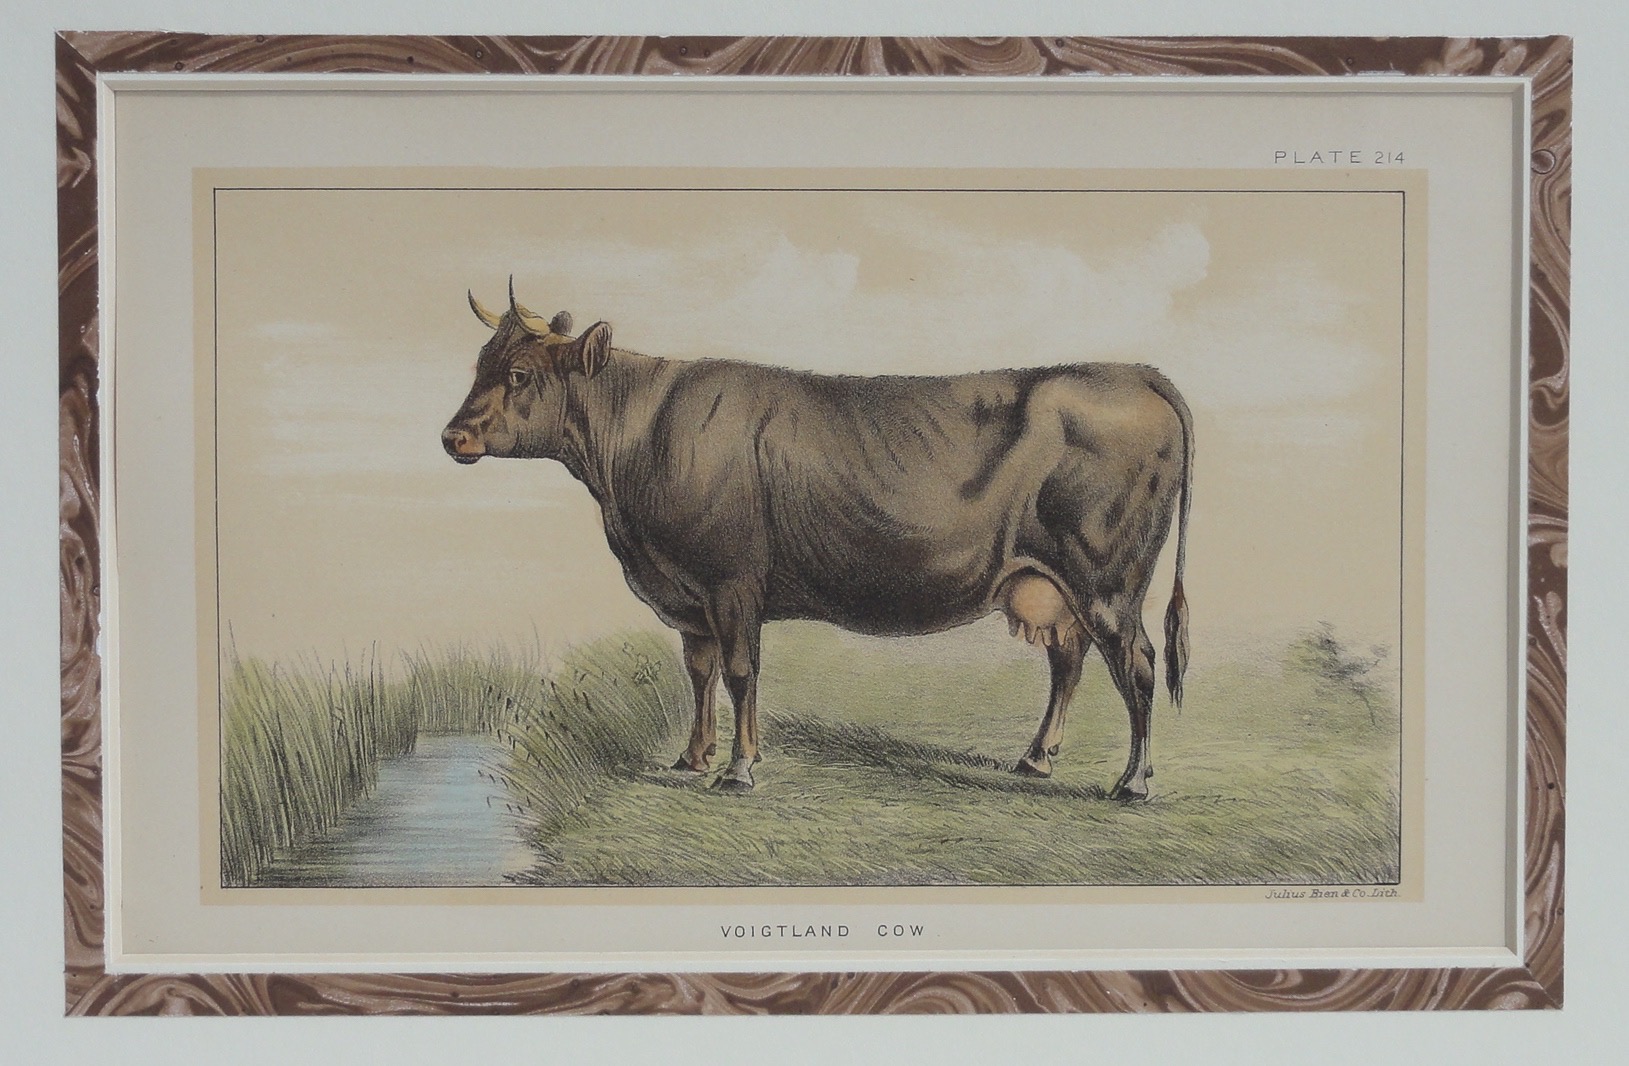 Voigtland Cow